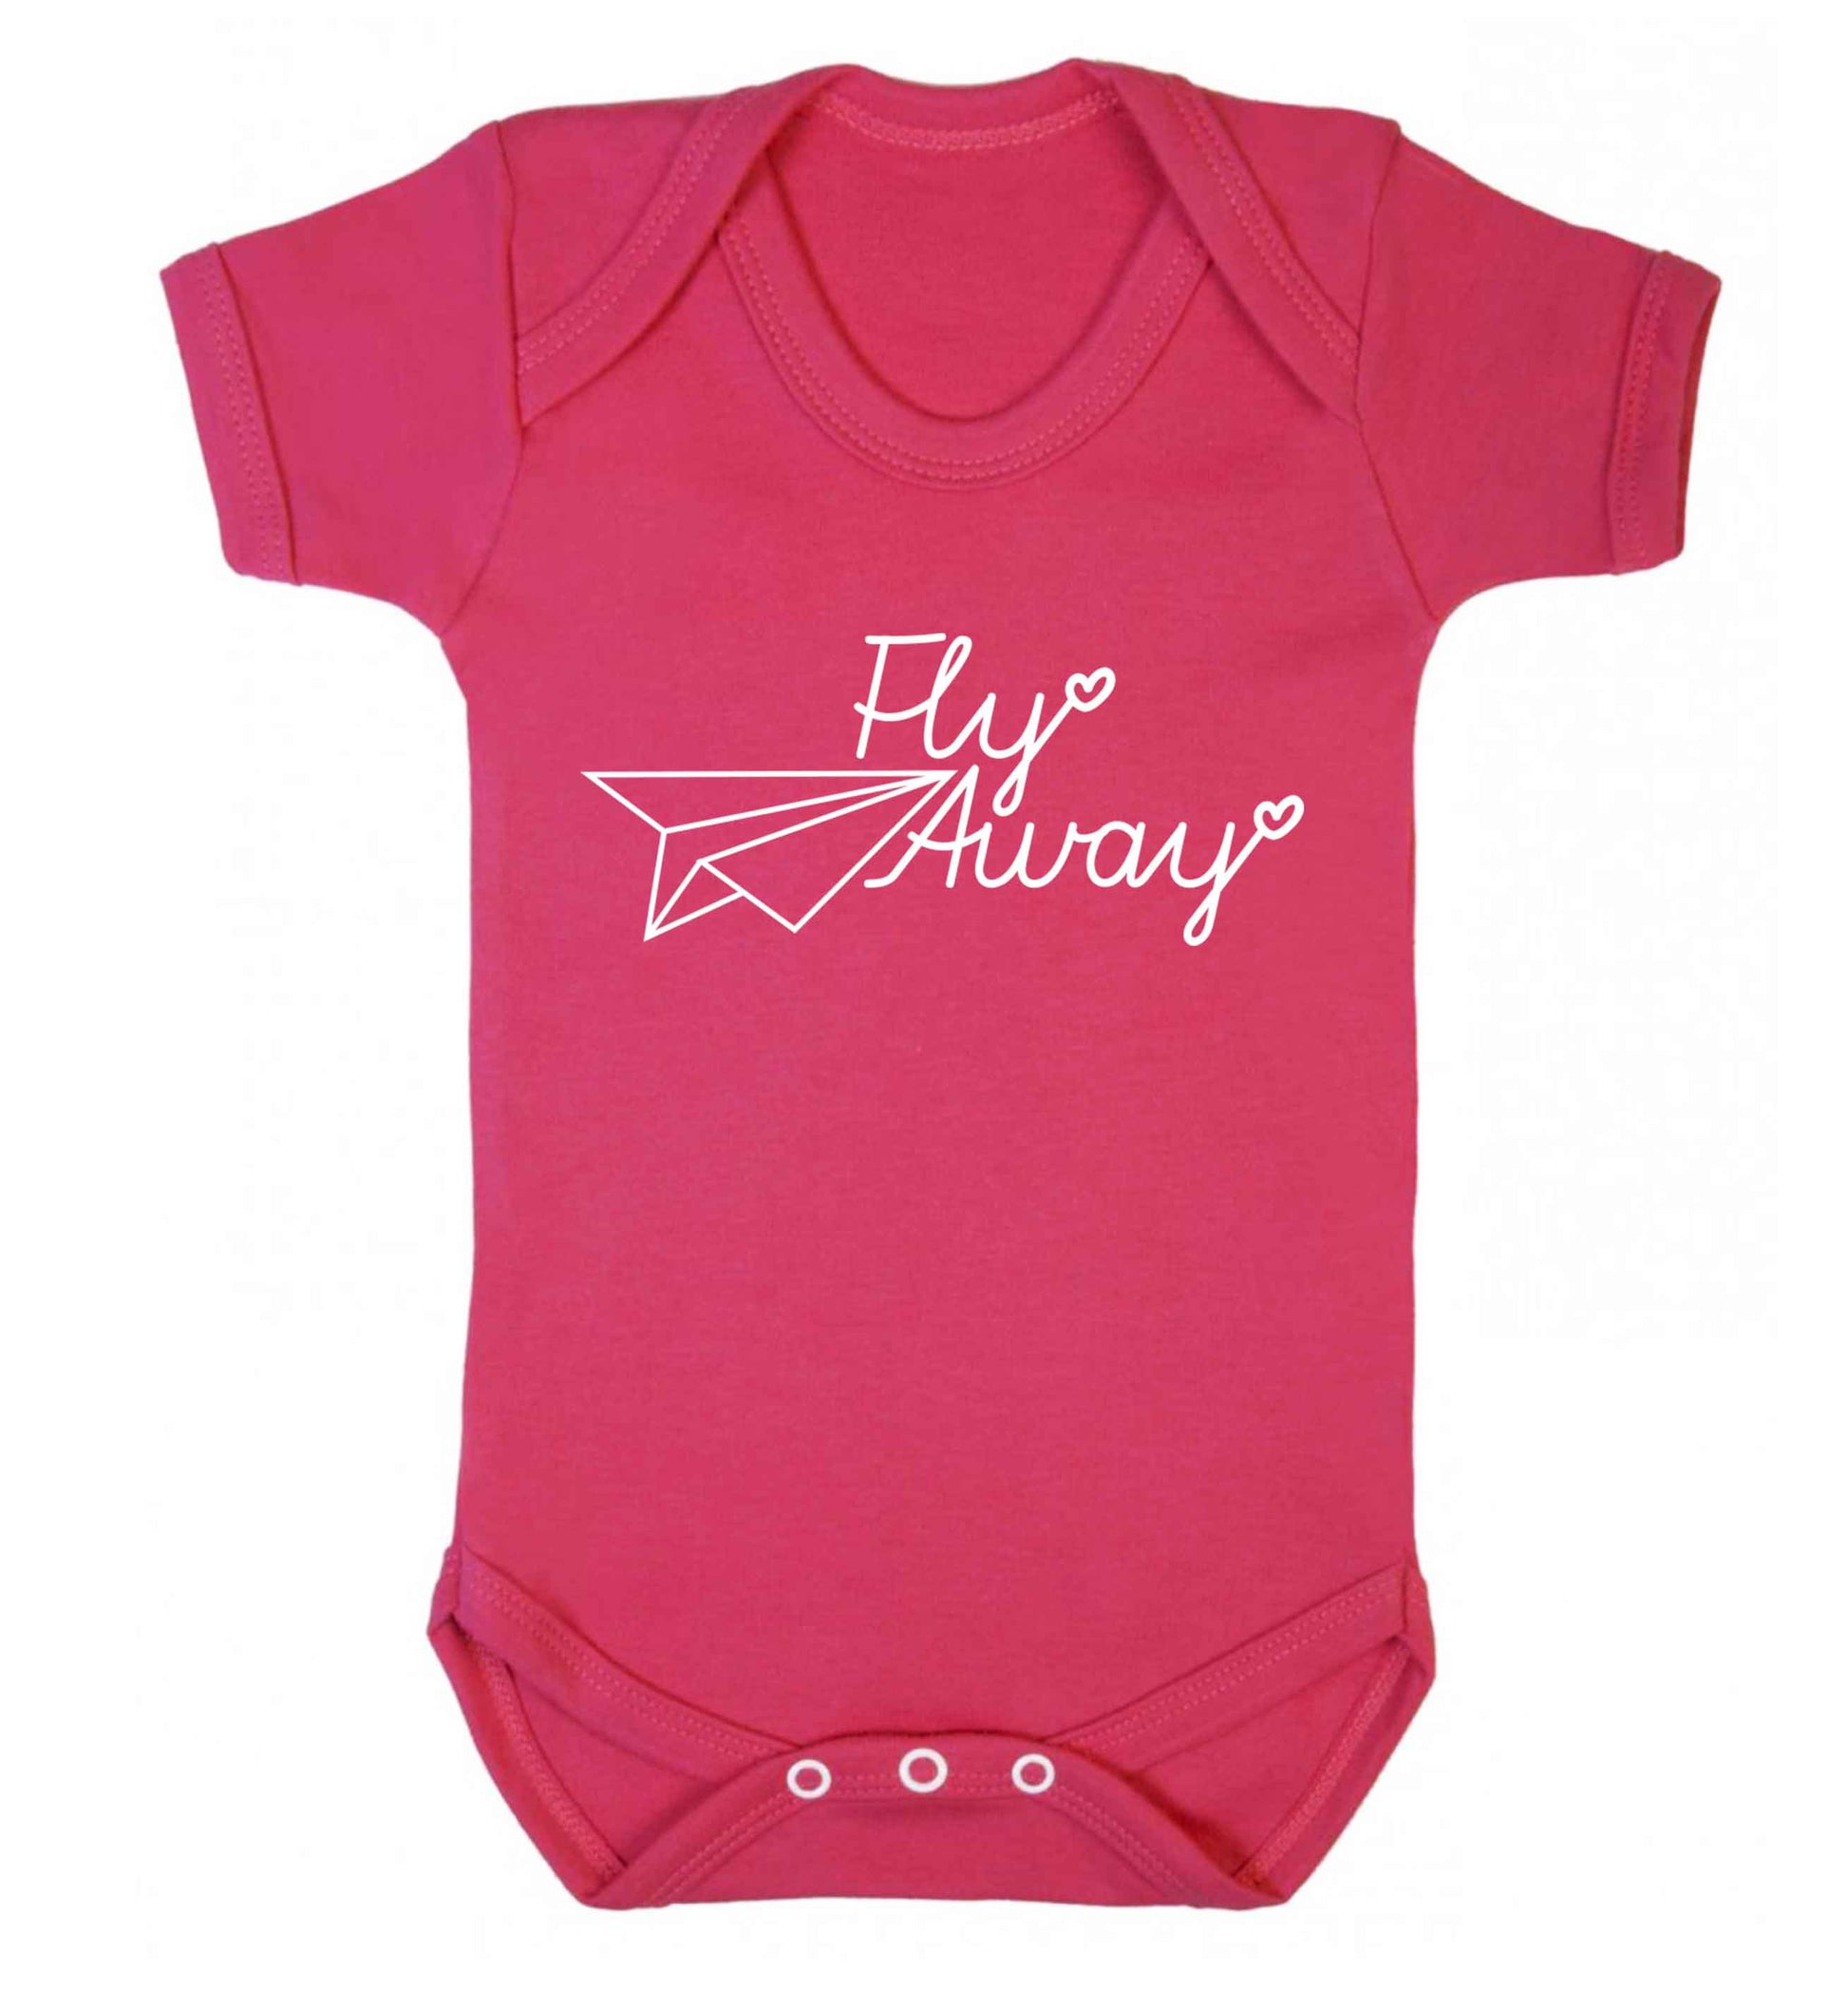 Fly away Baby Vest dark pink 18-24 months